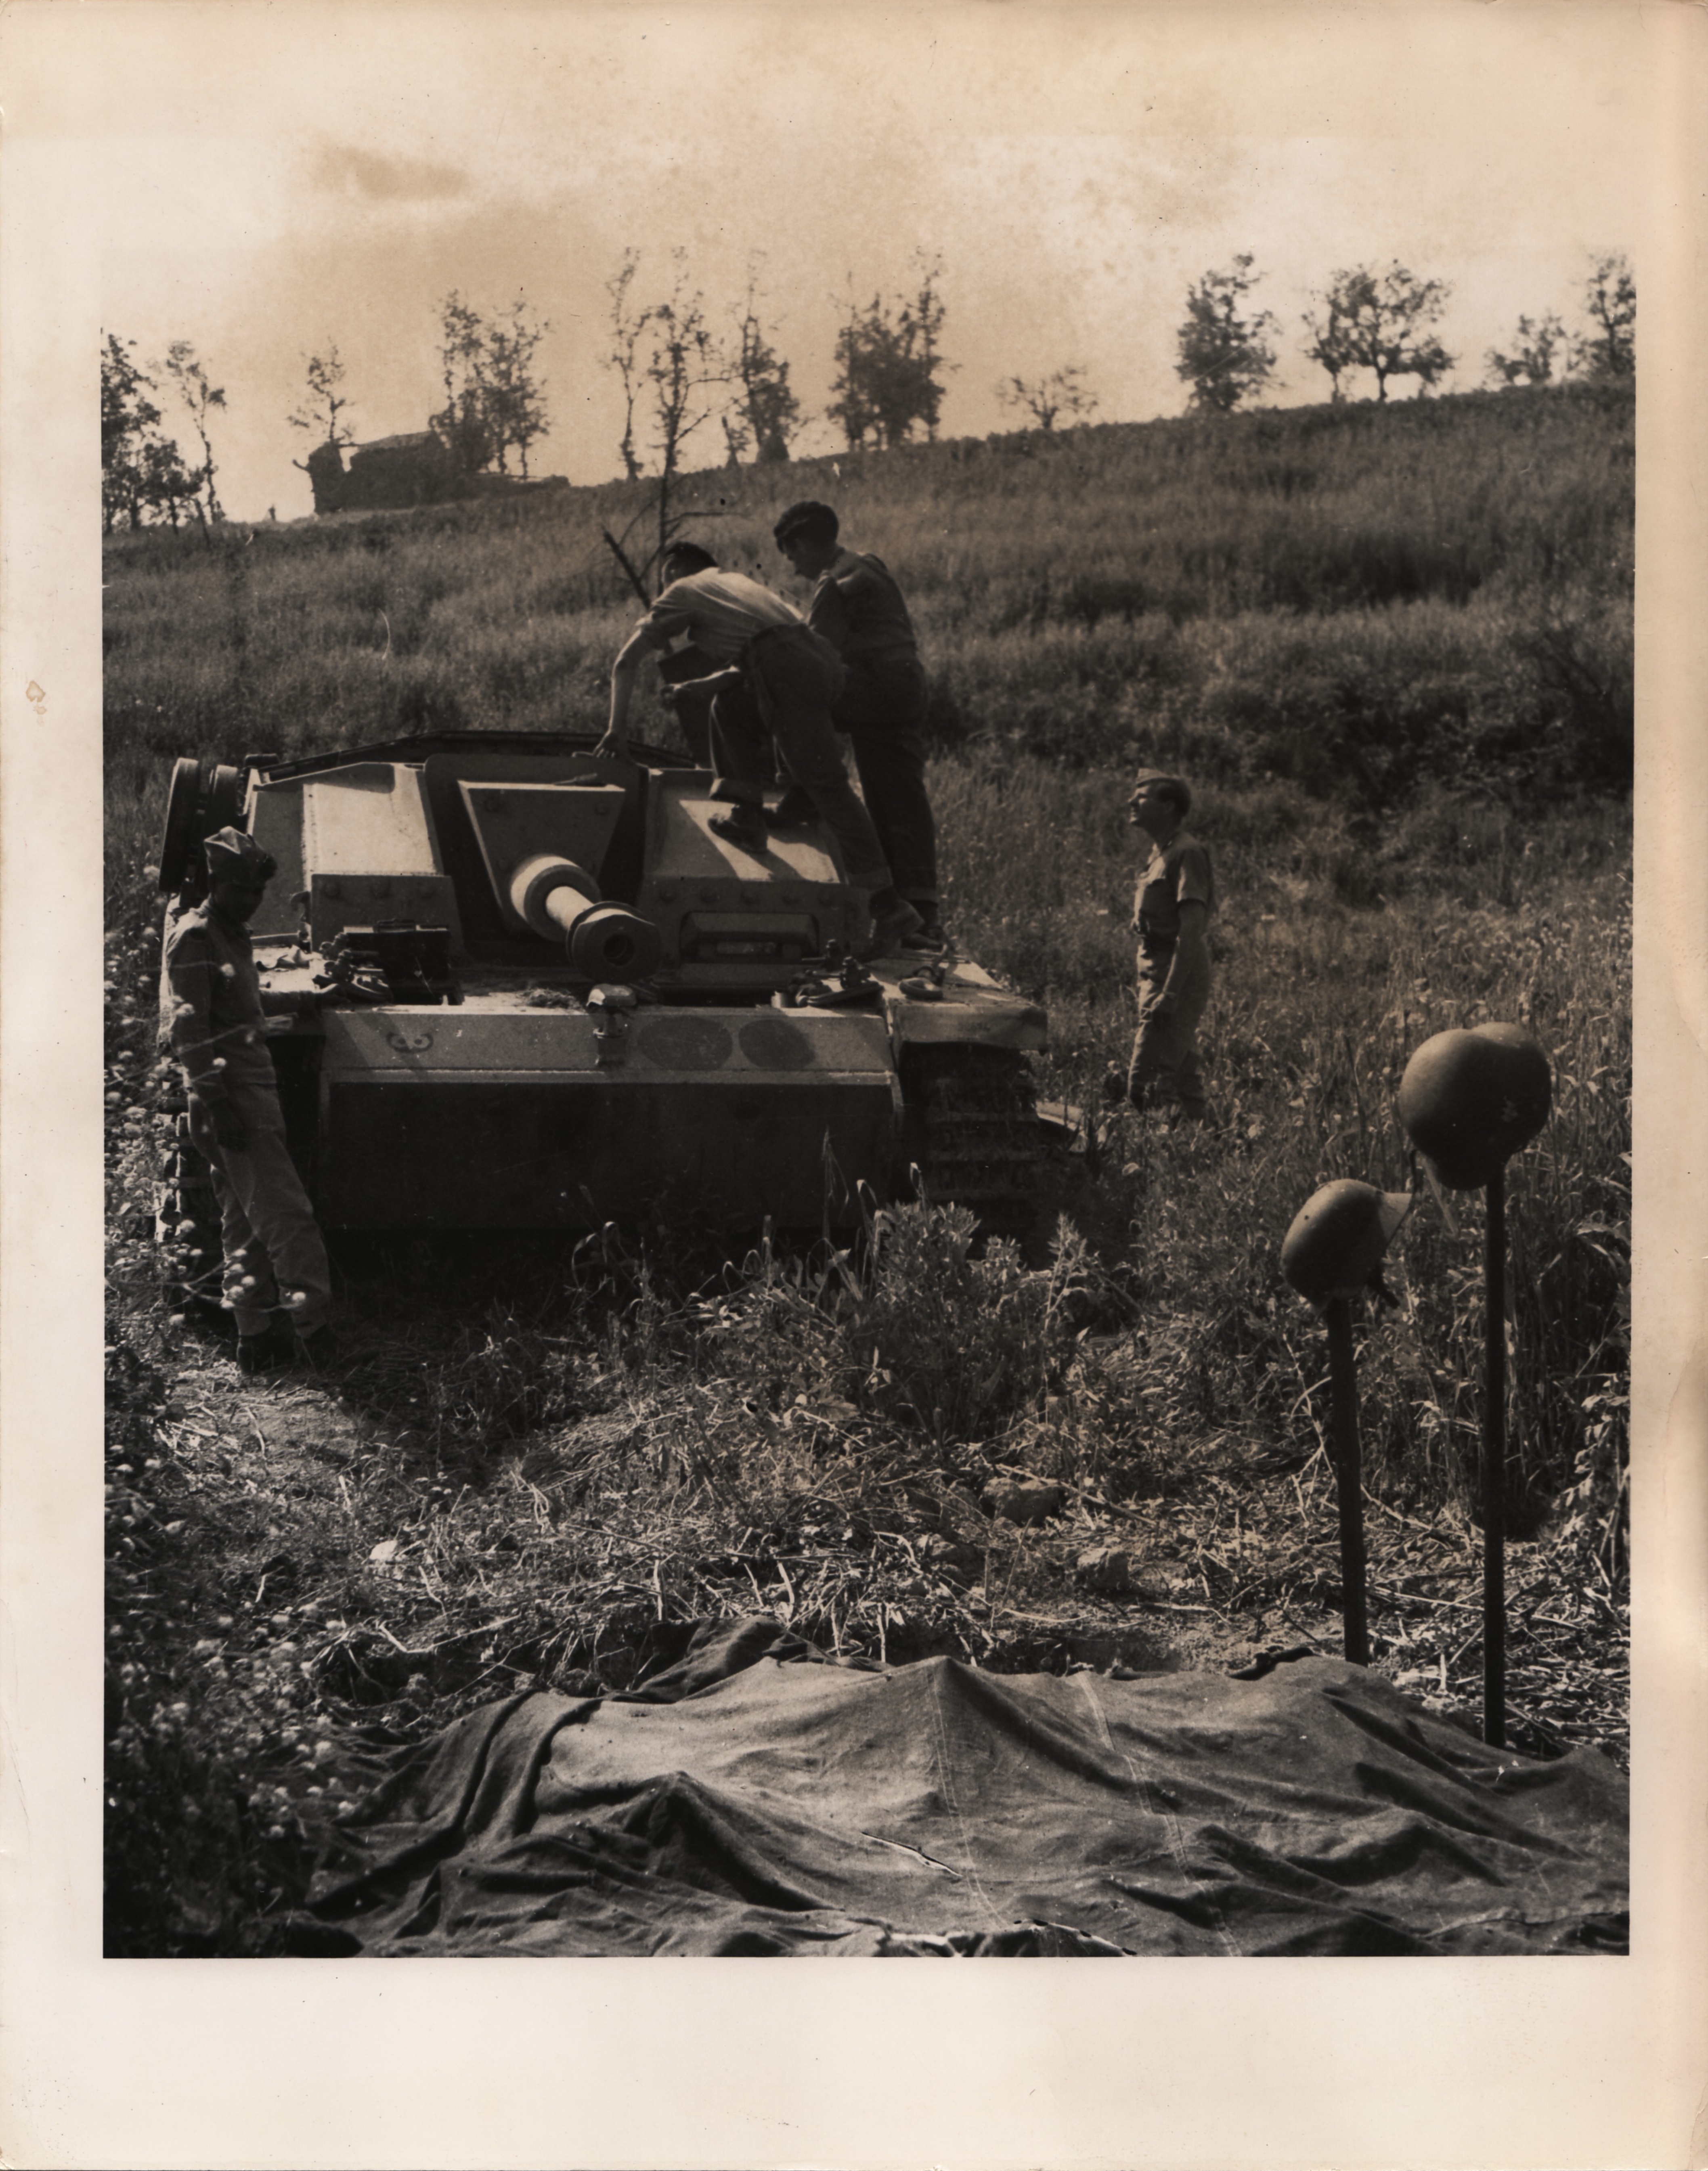 <p>Linea Senger, maggio 1944, campagna di Aquino. Soldati canadesi esaminano uno StuG III. Gli elmetti sui fucili servono a localizzare i corpi di due membri dell’equipaggio pietosamente ricoperti da un telo.<br />Il cannone semovente apparteneva alla SturmGeschutz Brigade 907, come si evince dal simbolo sulla parte frontale sx (per chi vede) del carro.</p><p class='eng'>PIGNATRO (sic!) AREA, ITALY... MAY 18, 1944... CAUGHT BY THE FIRE OF SHERMAN TANKS OF A CANADIAN TANK REGIMENT AFTER THEIR DRIVE ACROSS THE GARI RIVER, THIS GERMAN TANK WAS INCAPACITATED AND IT'S CREW WHEN THEY TRIED TO ESCAPE KILLED. THE CREW LIES UNDER THE COVERS IN THE FOREGROUND M<RKED BY THE HELMETS. CANADIAN ARMY FILM UNIT PHOTO THRU PWB-OWI... SERVICED "E" AND NAPLES LIST AND R ..........<br />APPROVED BY APPROPRIATE MILITARY AUTHORITY........ PHOTO NO. 877</p>